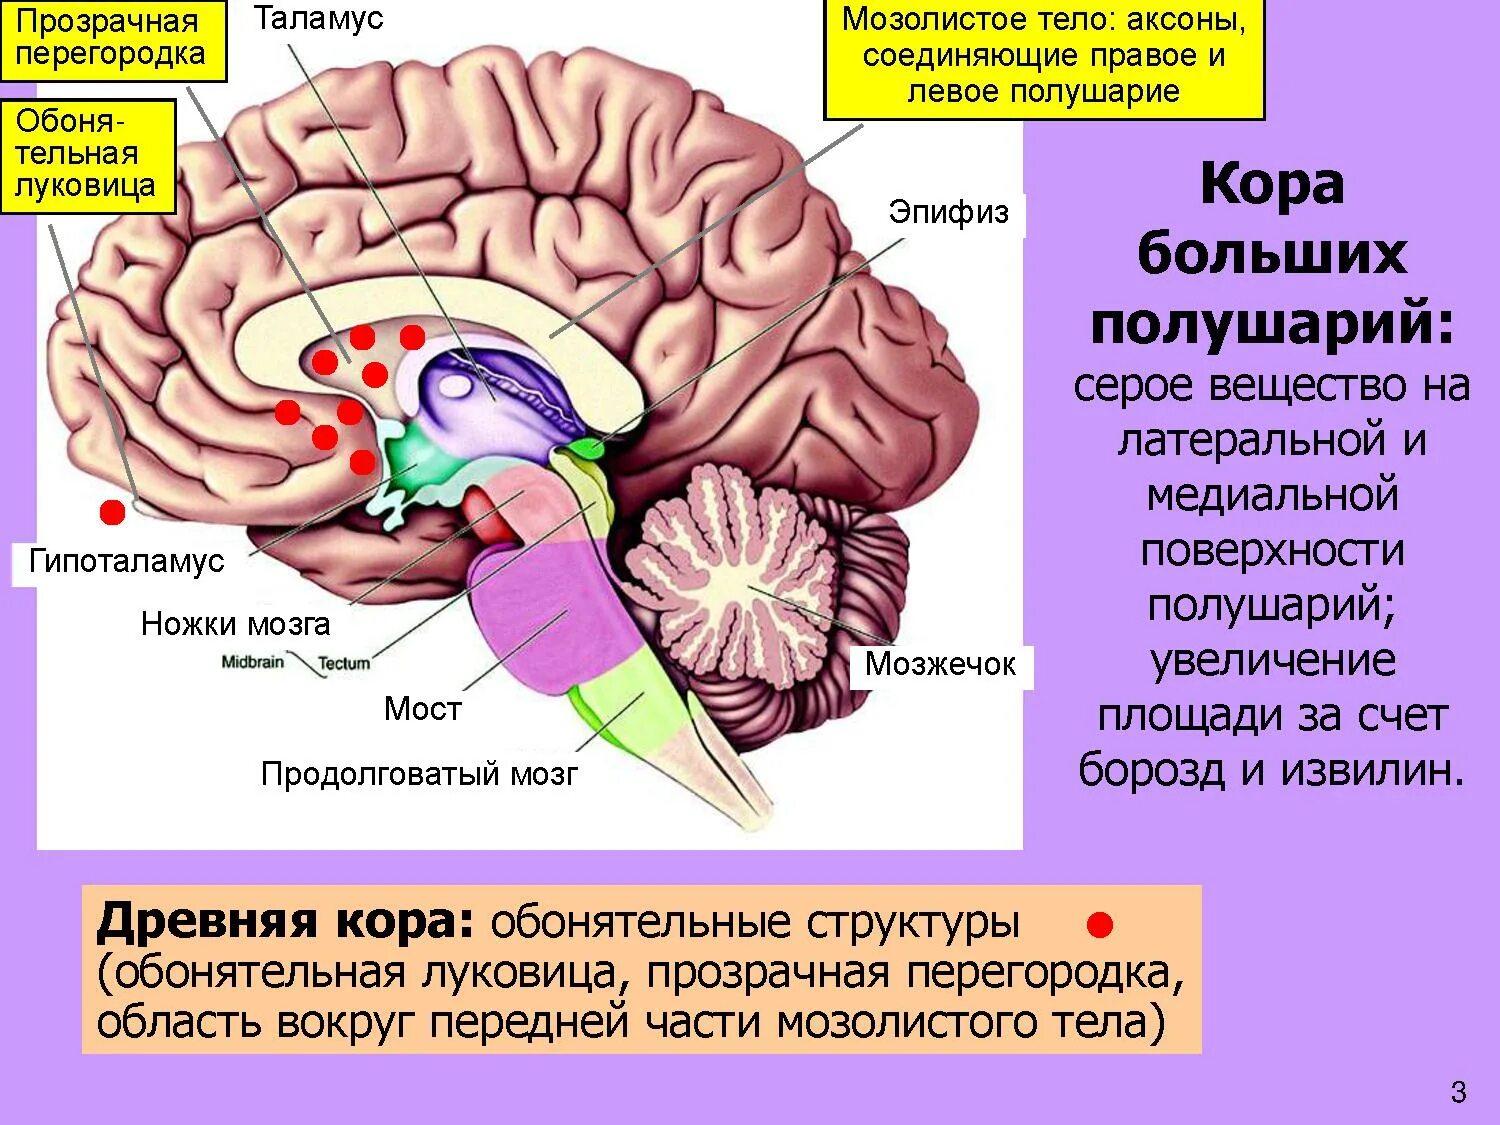 Мозолистое тело конечного мозга функции. Прозрачная перегородка мозга анатомия. Строение мозолистого тела головного мозга. Таламус, гипоталамус, мост, мозжечок, продолговатый мозг.. Структурные изменения мозга